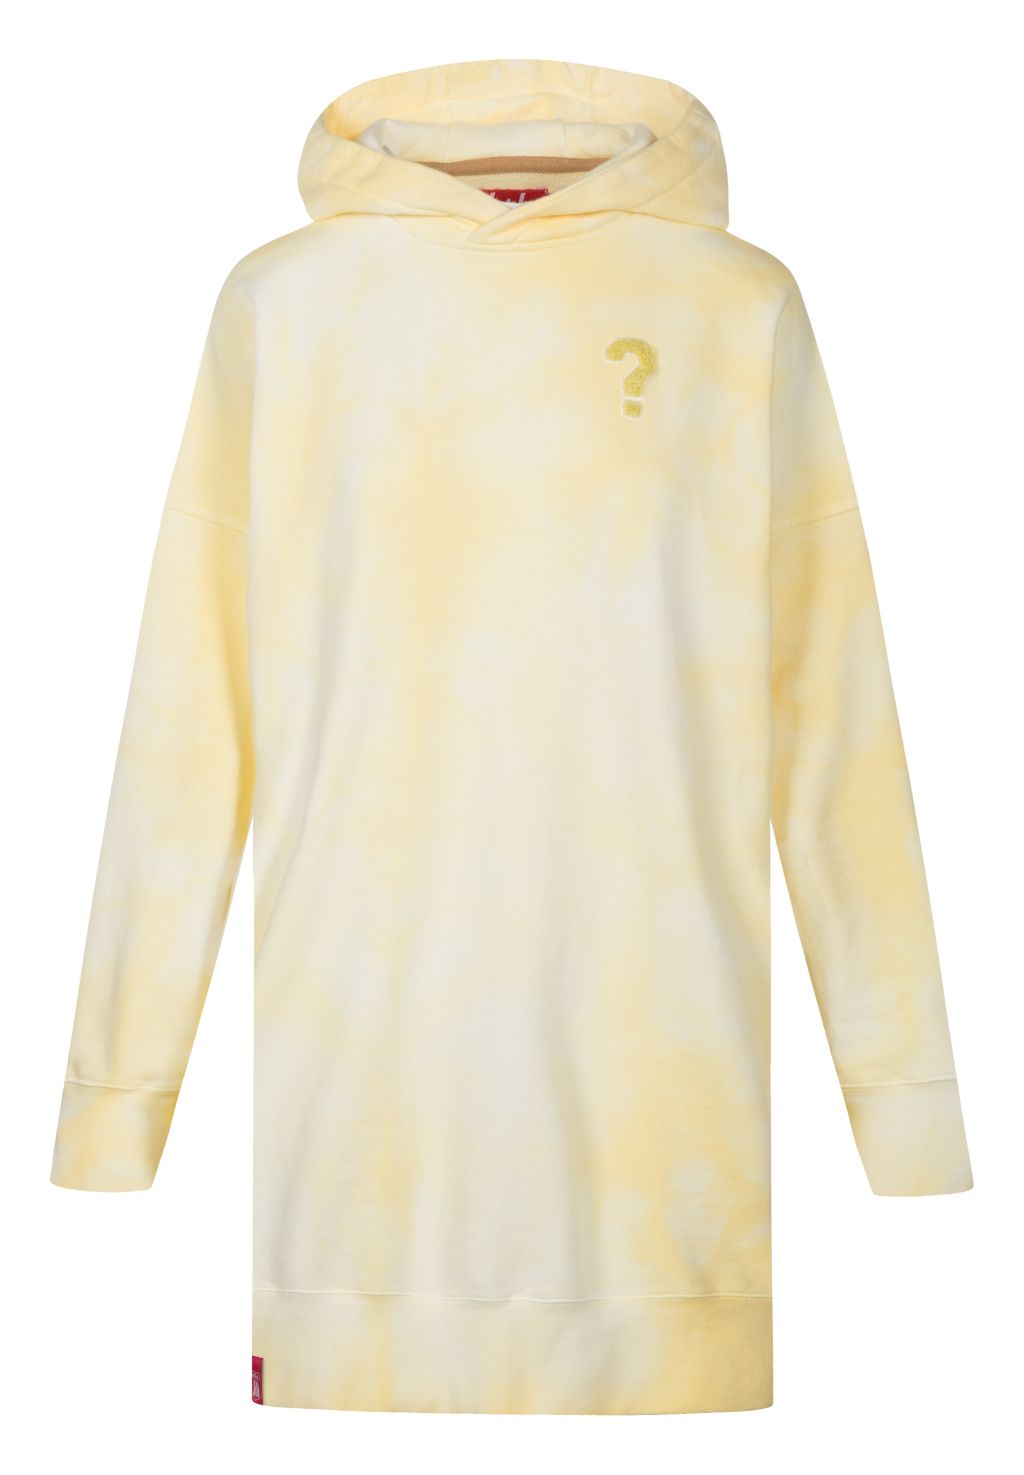 Fragezeichen - Long Hoodie batik pastel yellow XL